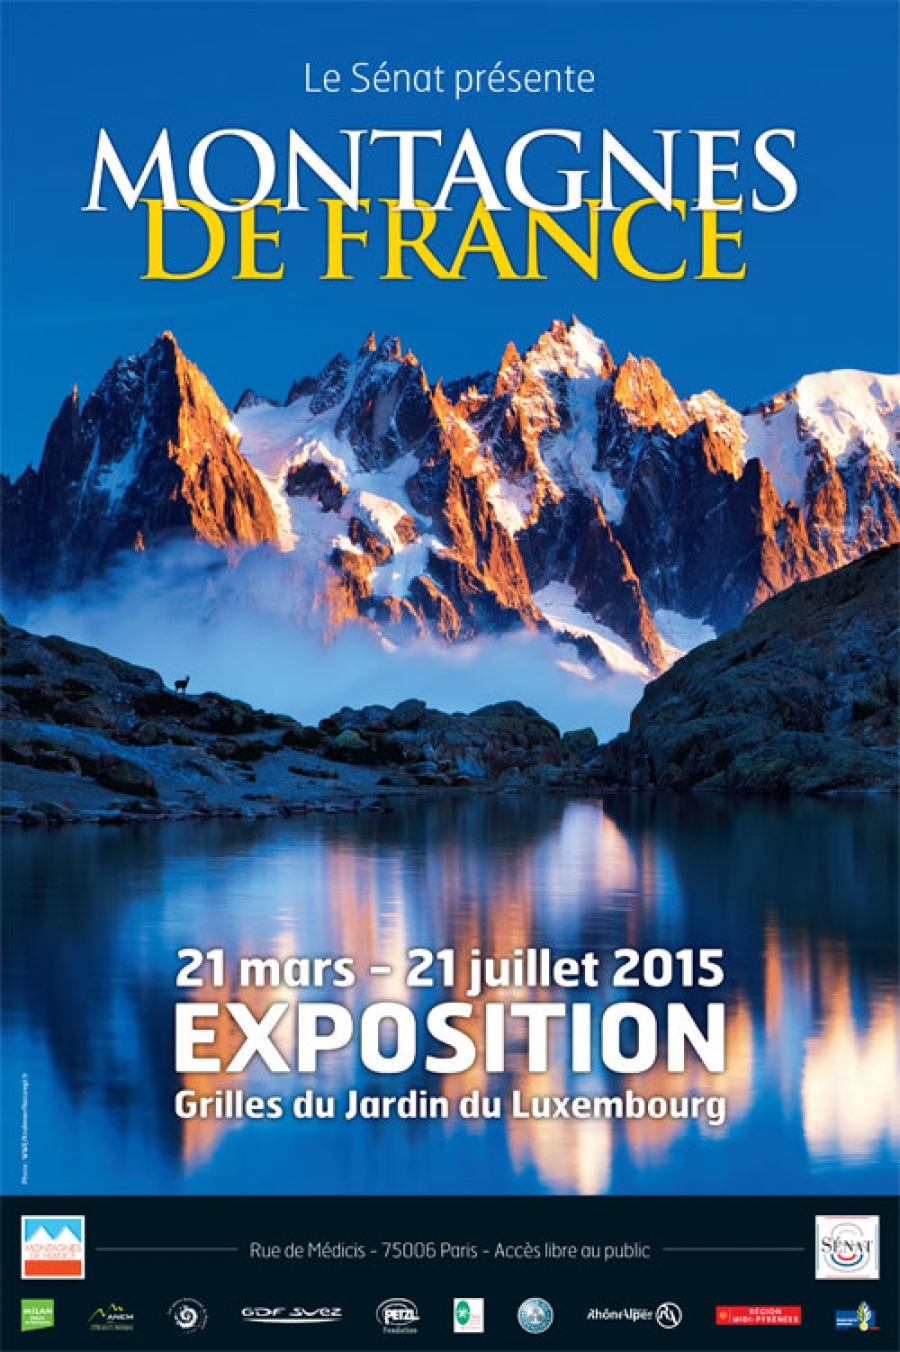 Exposition « Montagnes de France » à Paris